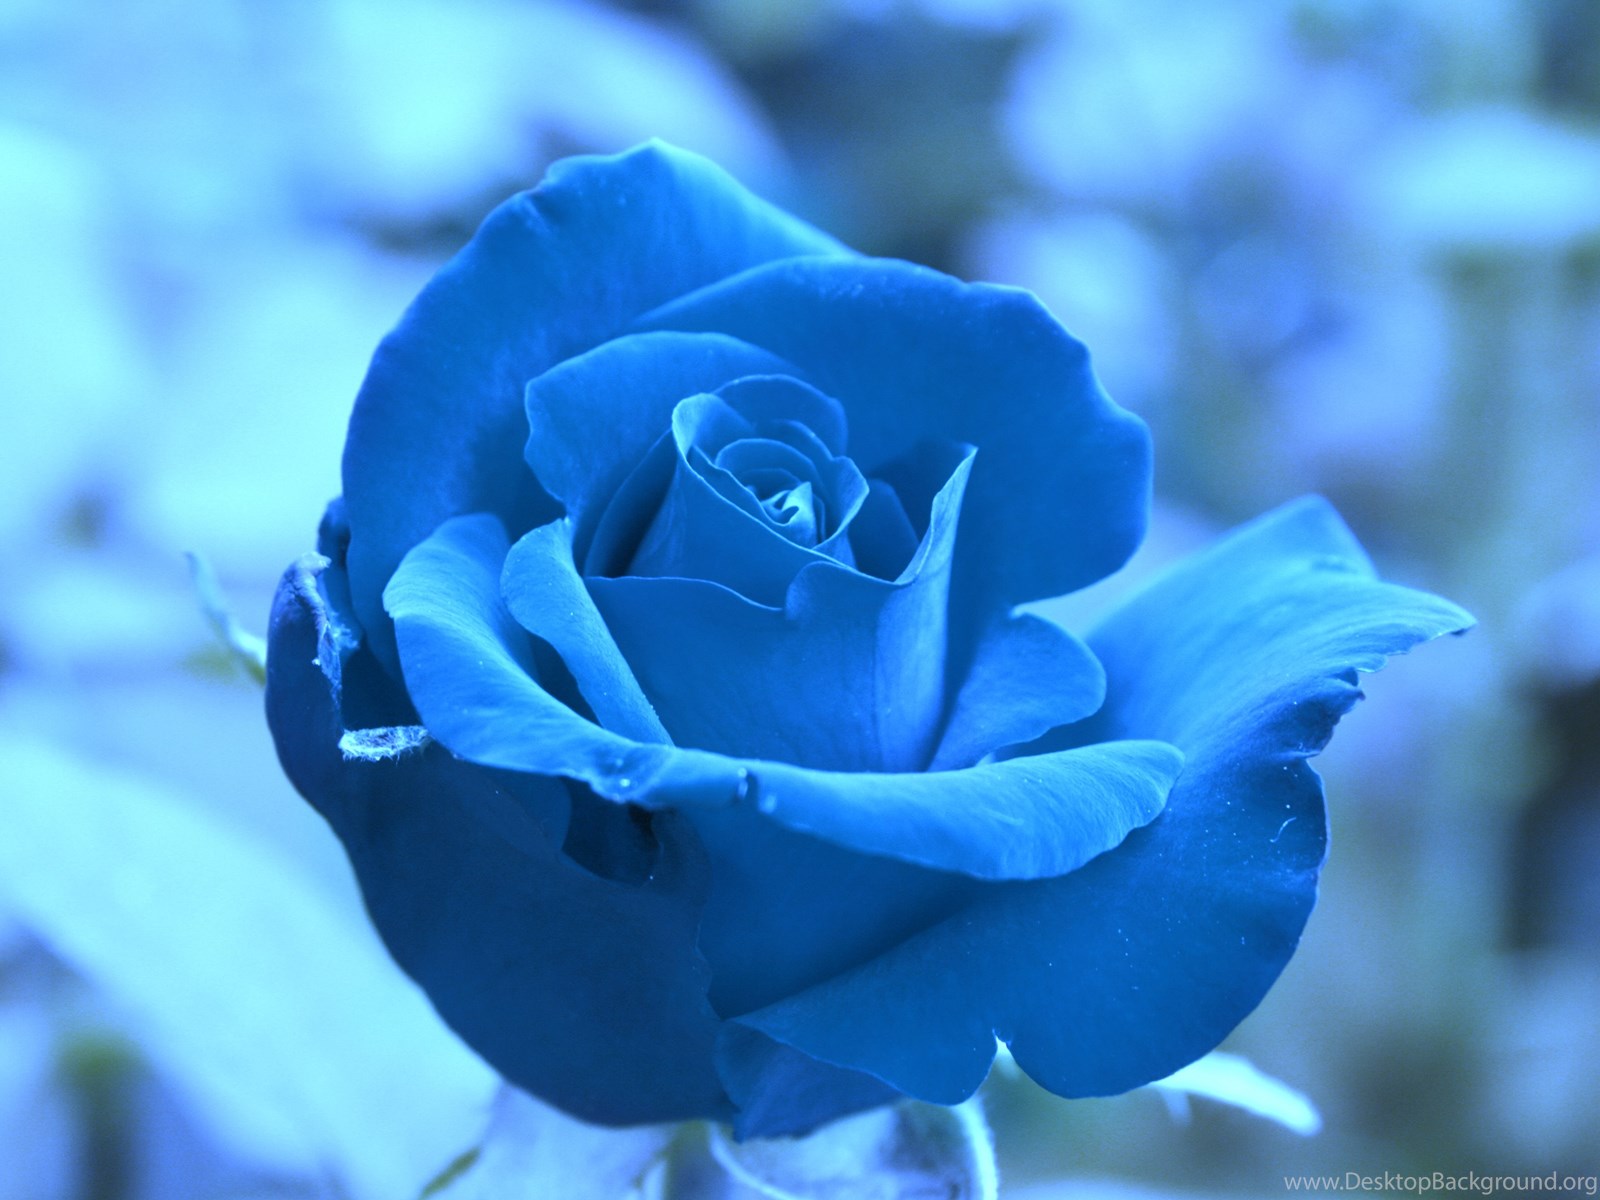 Полюбила голубого. Голубые розы Сантори. Голубой цвет. Синие цветы. Розы синего цвета.